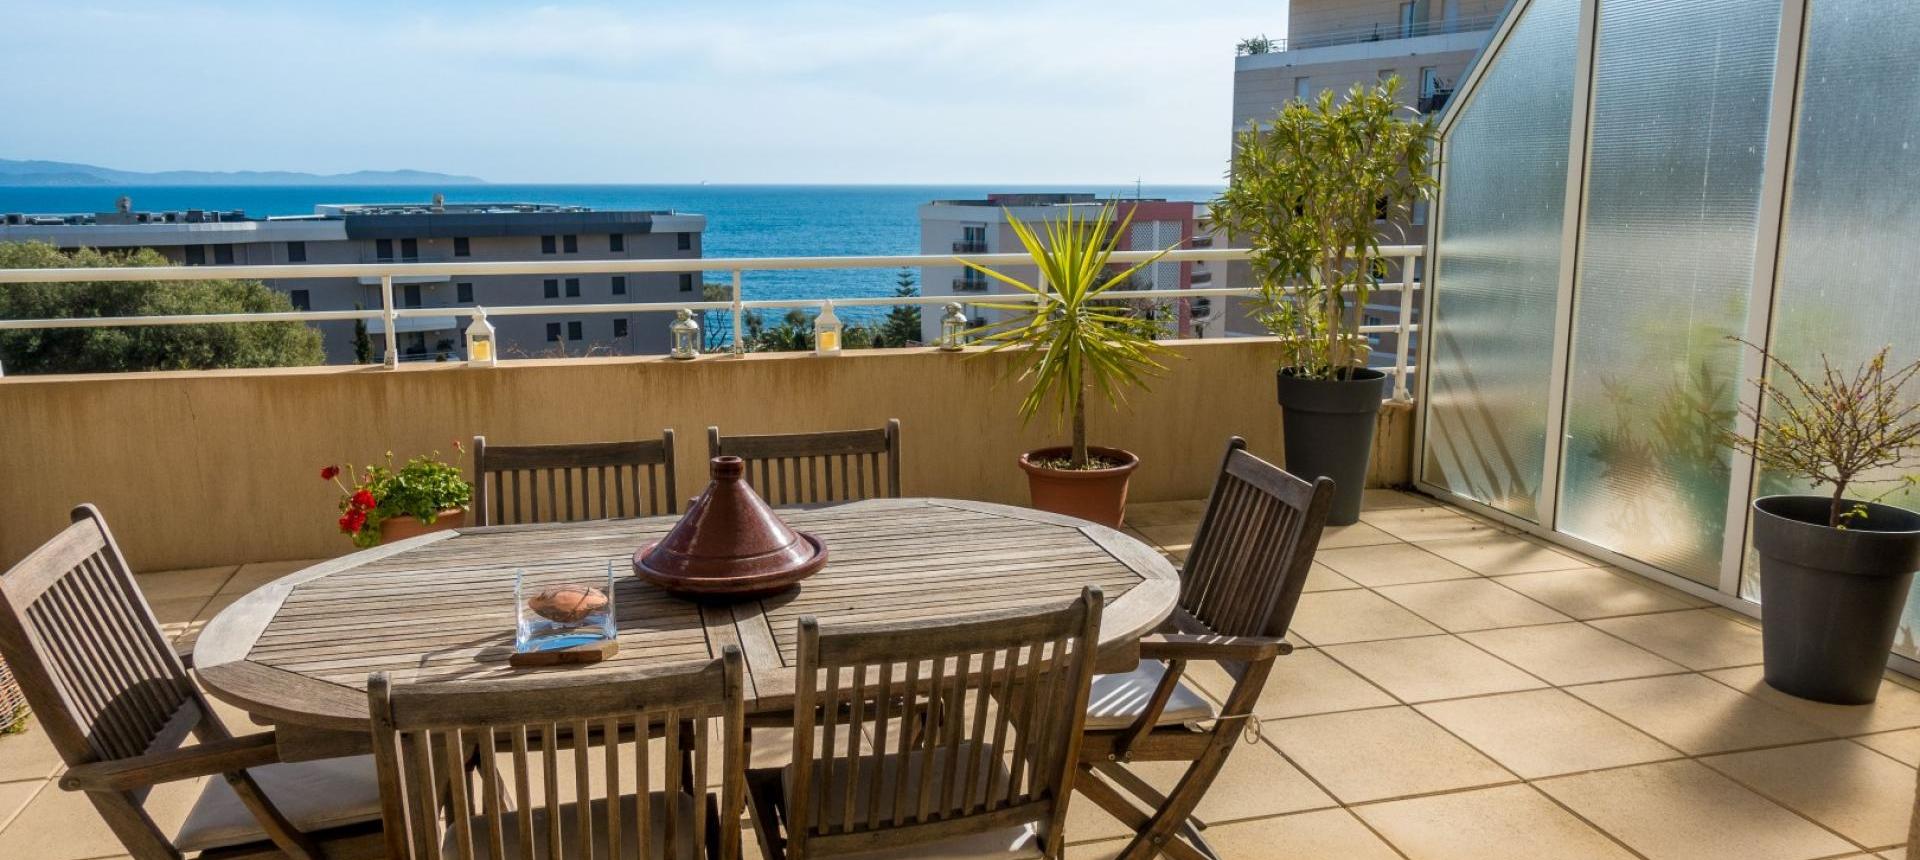 En Corse, à Ajaccio, Sur la route des Sanguinaires, A vendre appartement de type F2 avec terrasse vue mer dans un immeuble récent